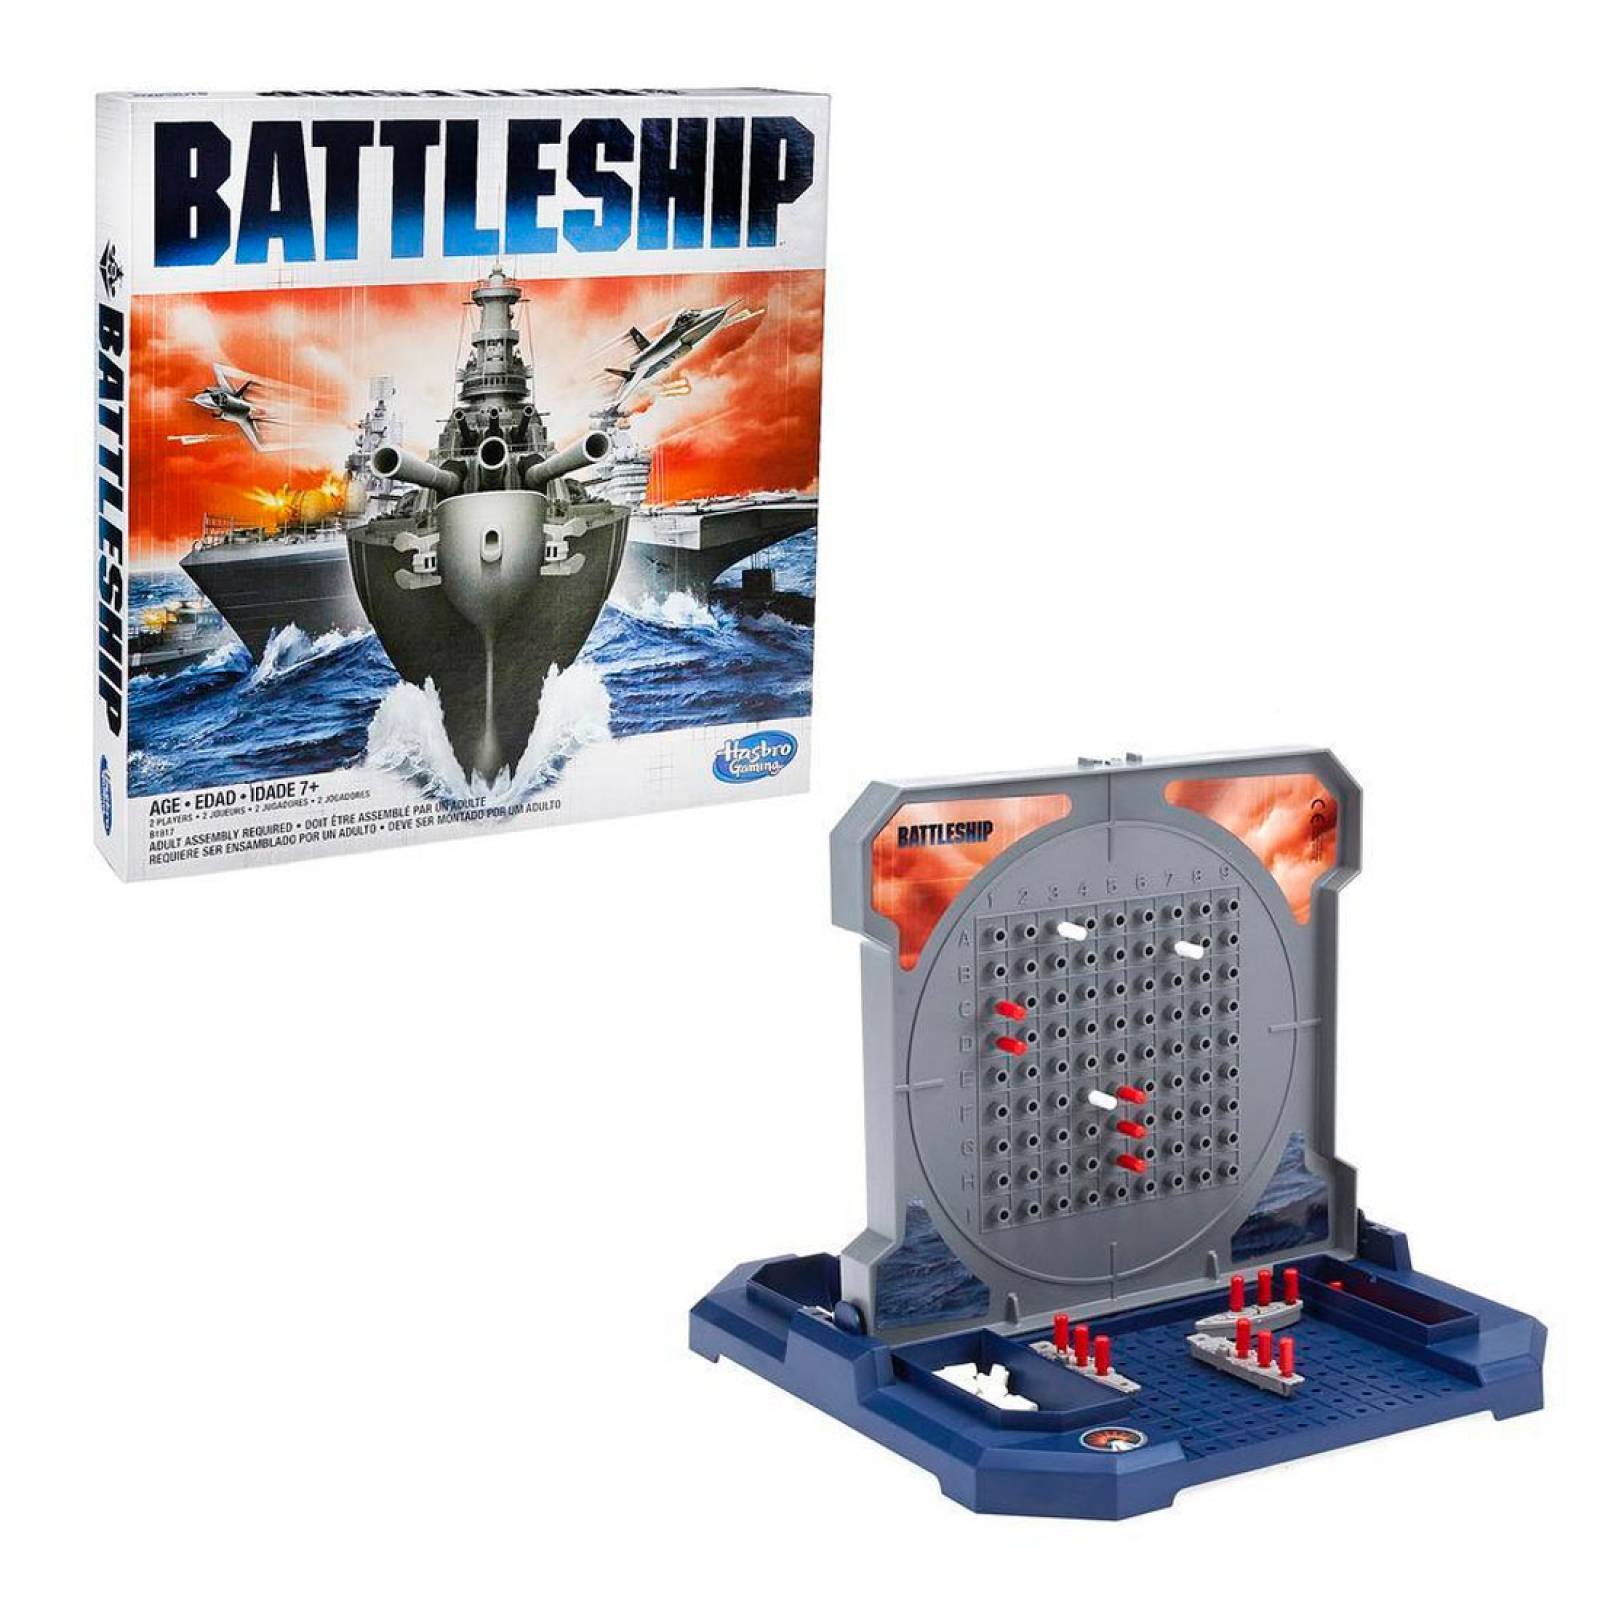 Juego De Mesa Battleship Batalla Naval Hasbro Gaming